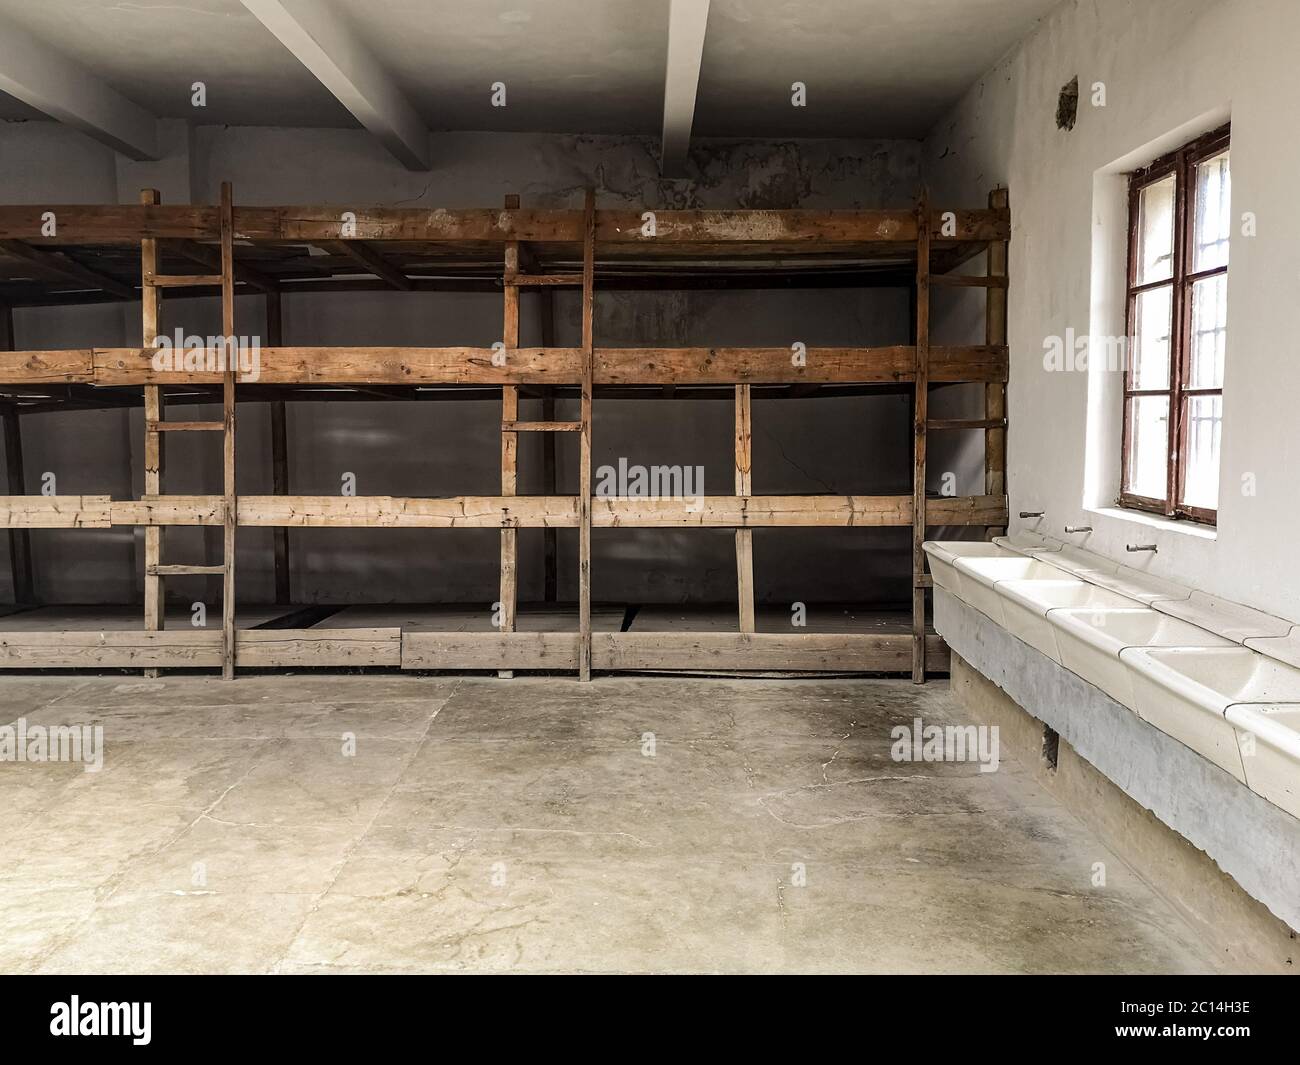 Terezin, czech republic - june 13 2020: Holocaust Confinement cell in concentration camp of Terezin, czech republic  Stock Photo